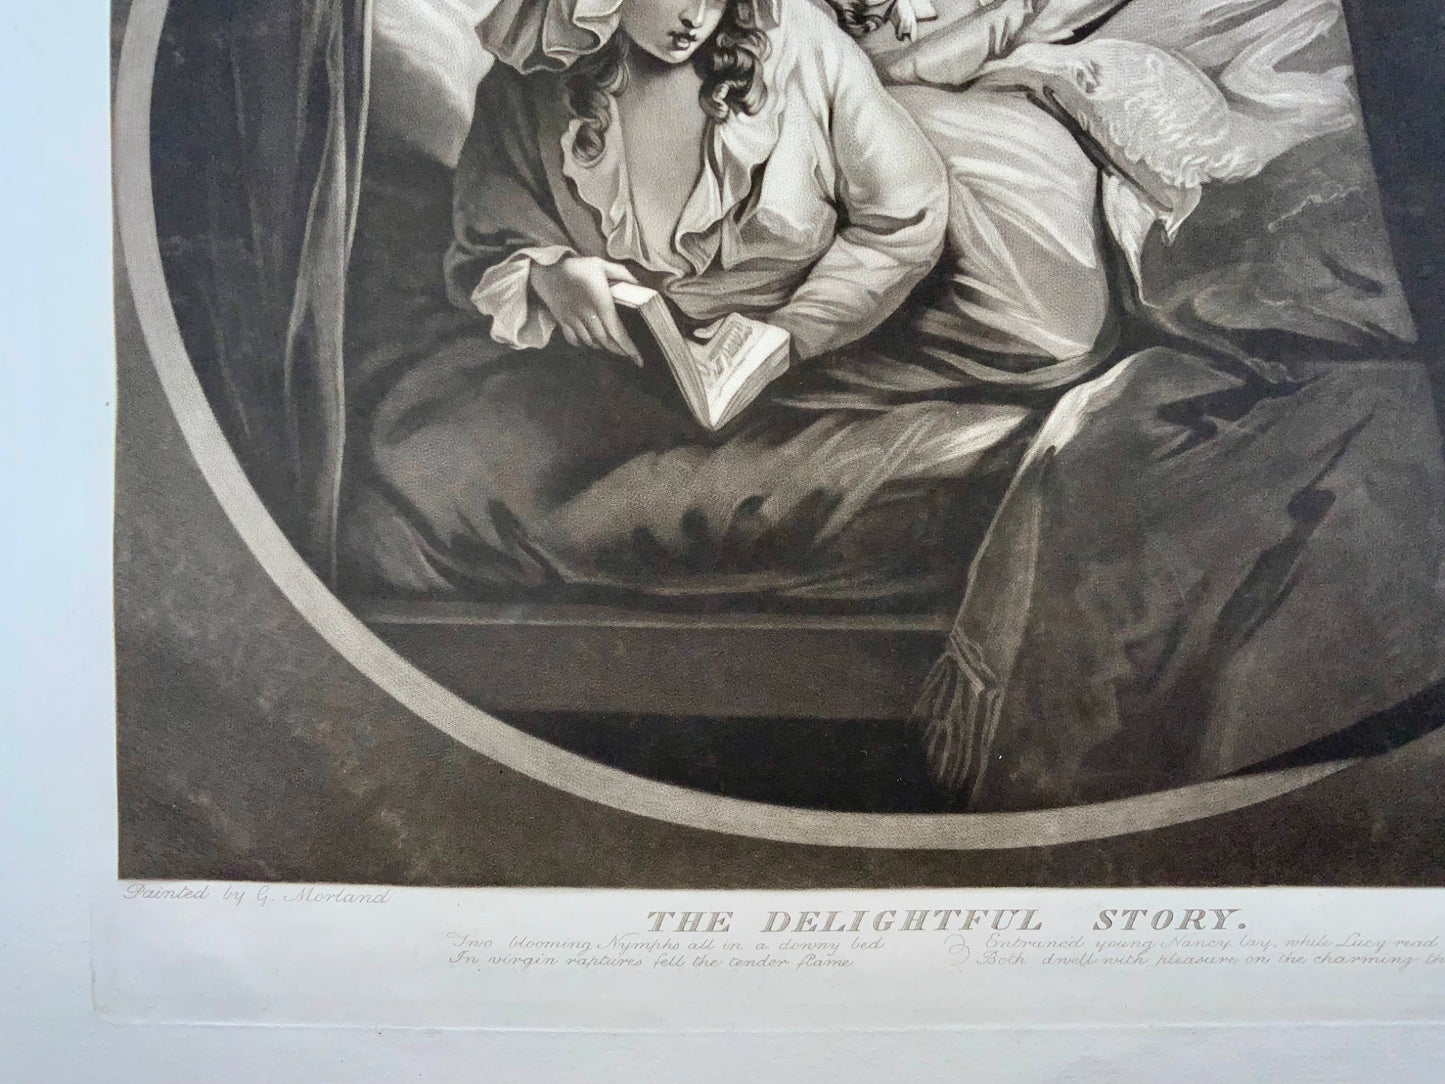 1787 La deliziosa storia, grande mezzatinta di William Ward secondo George Morland, arte classica